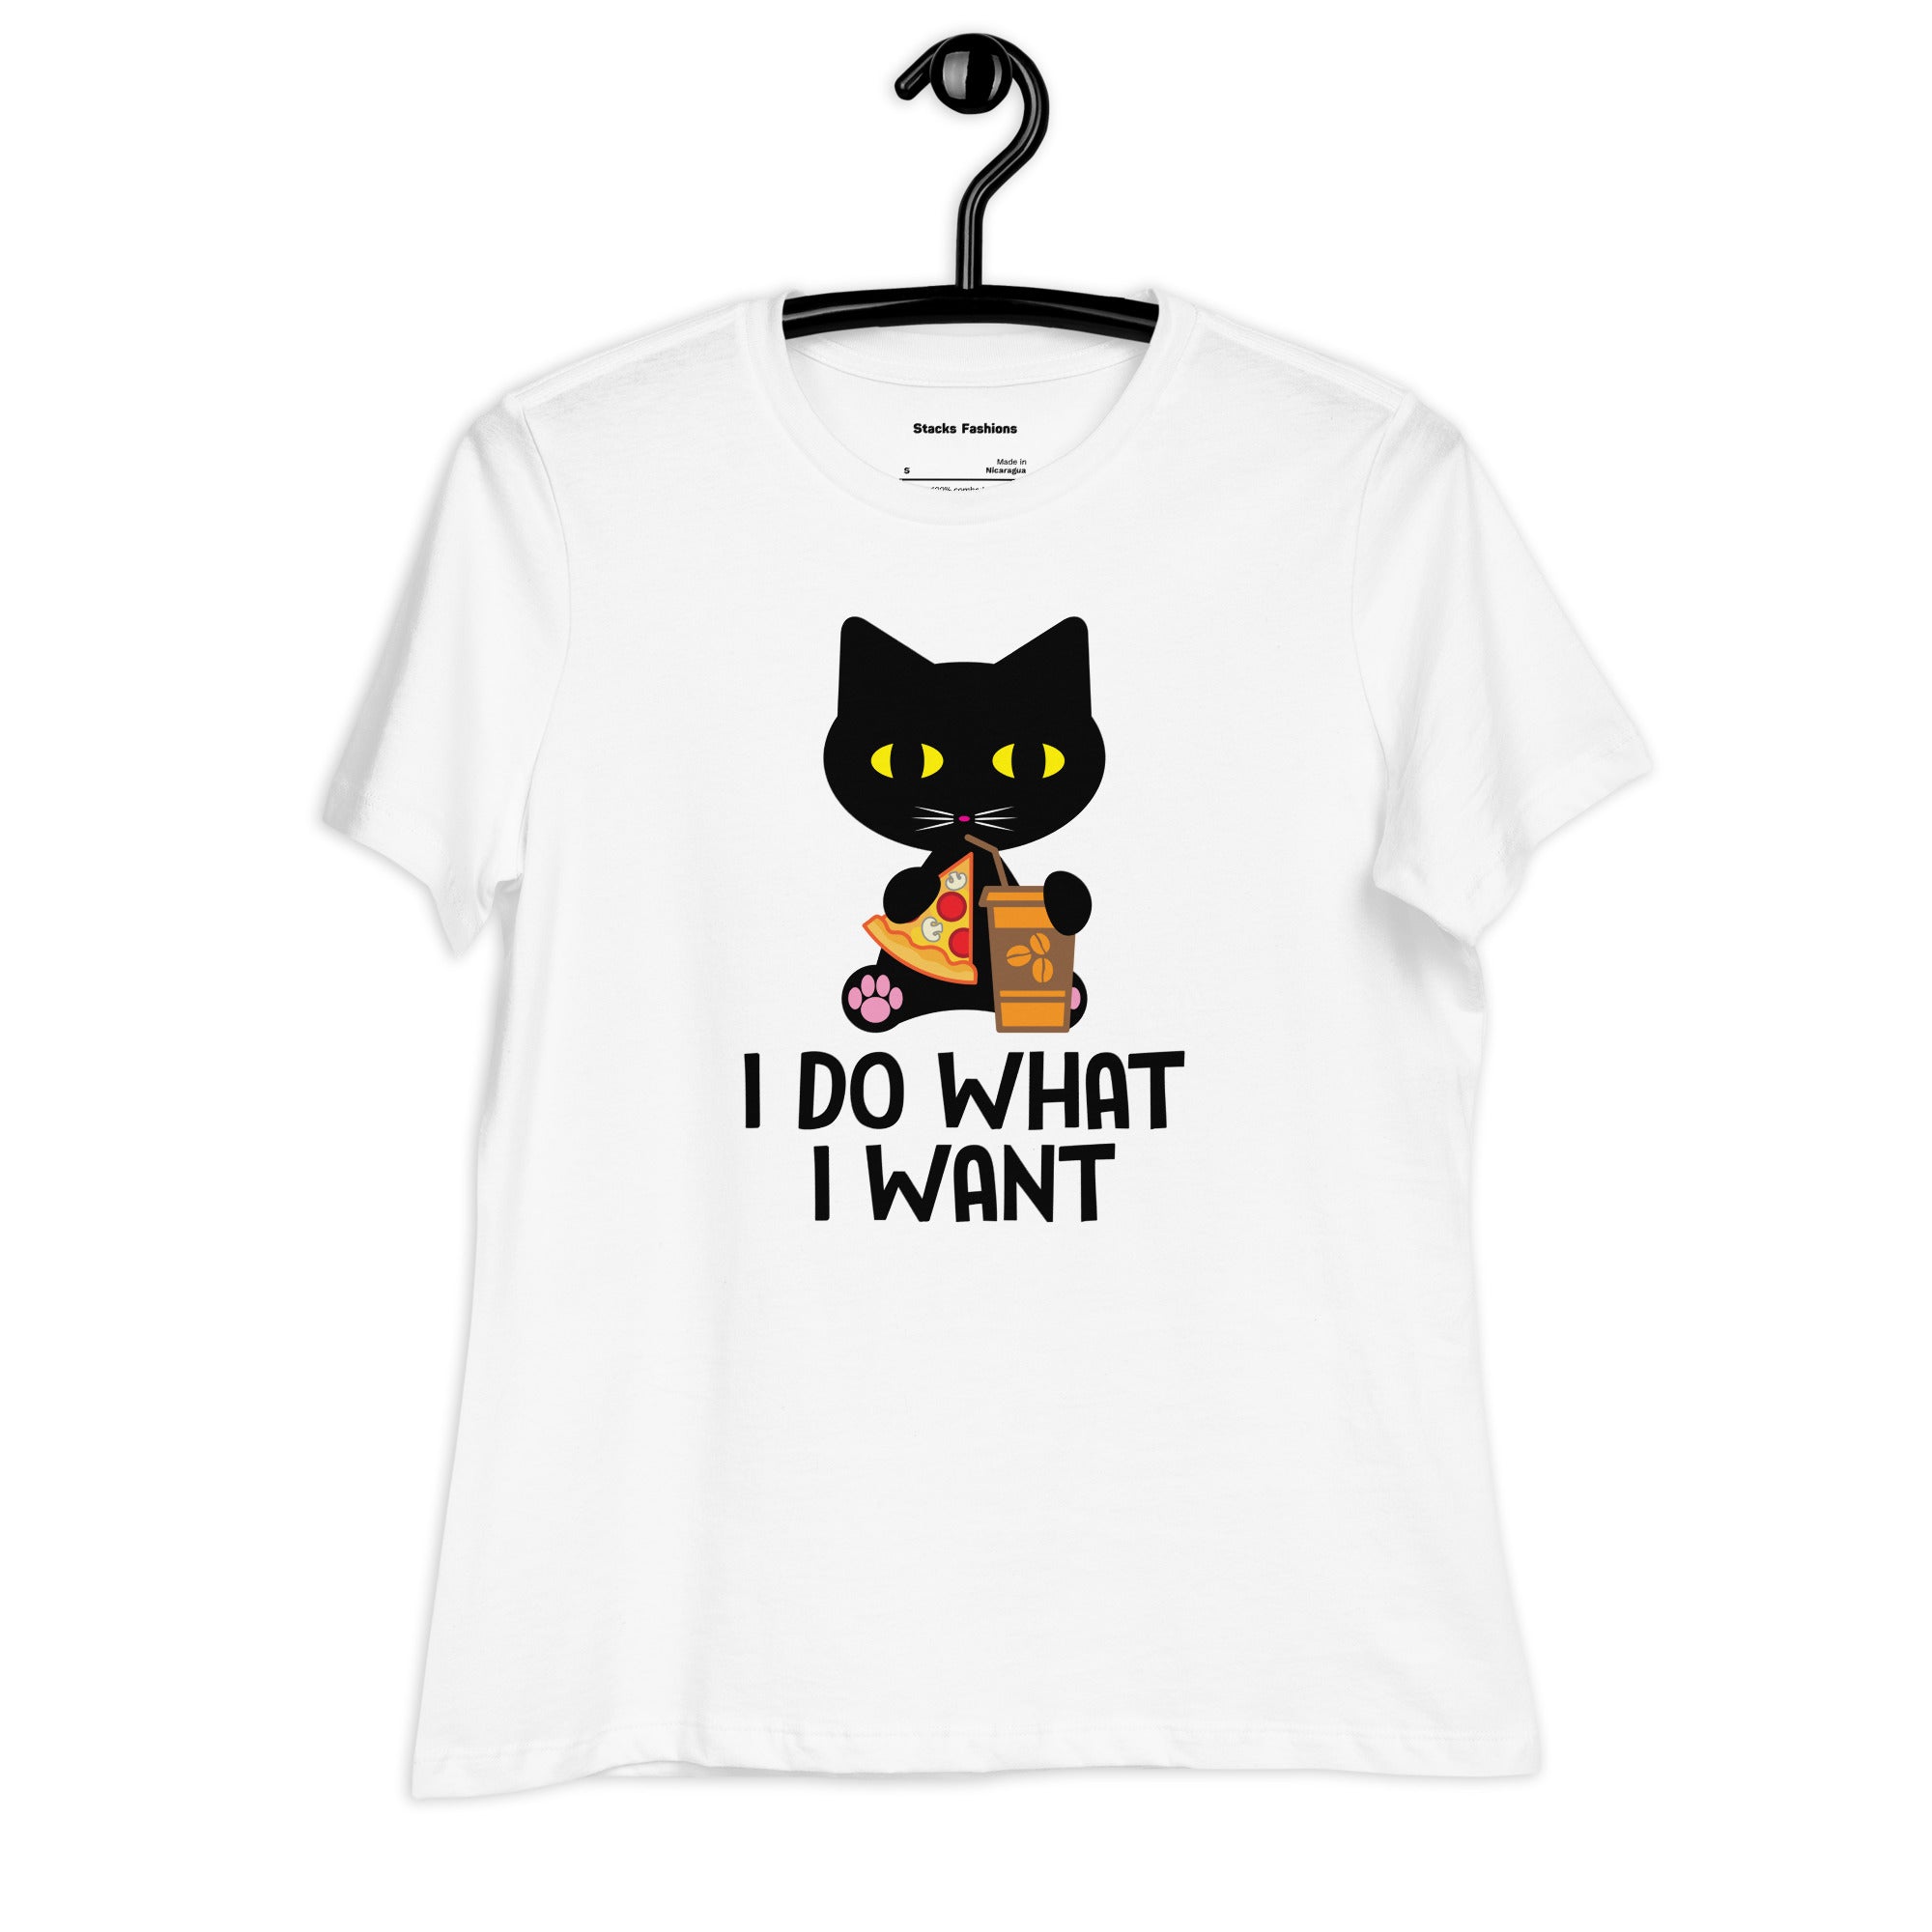 I do want I want T-Shirt.